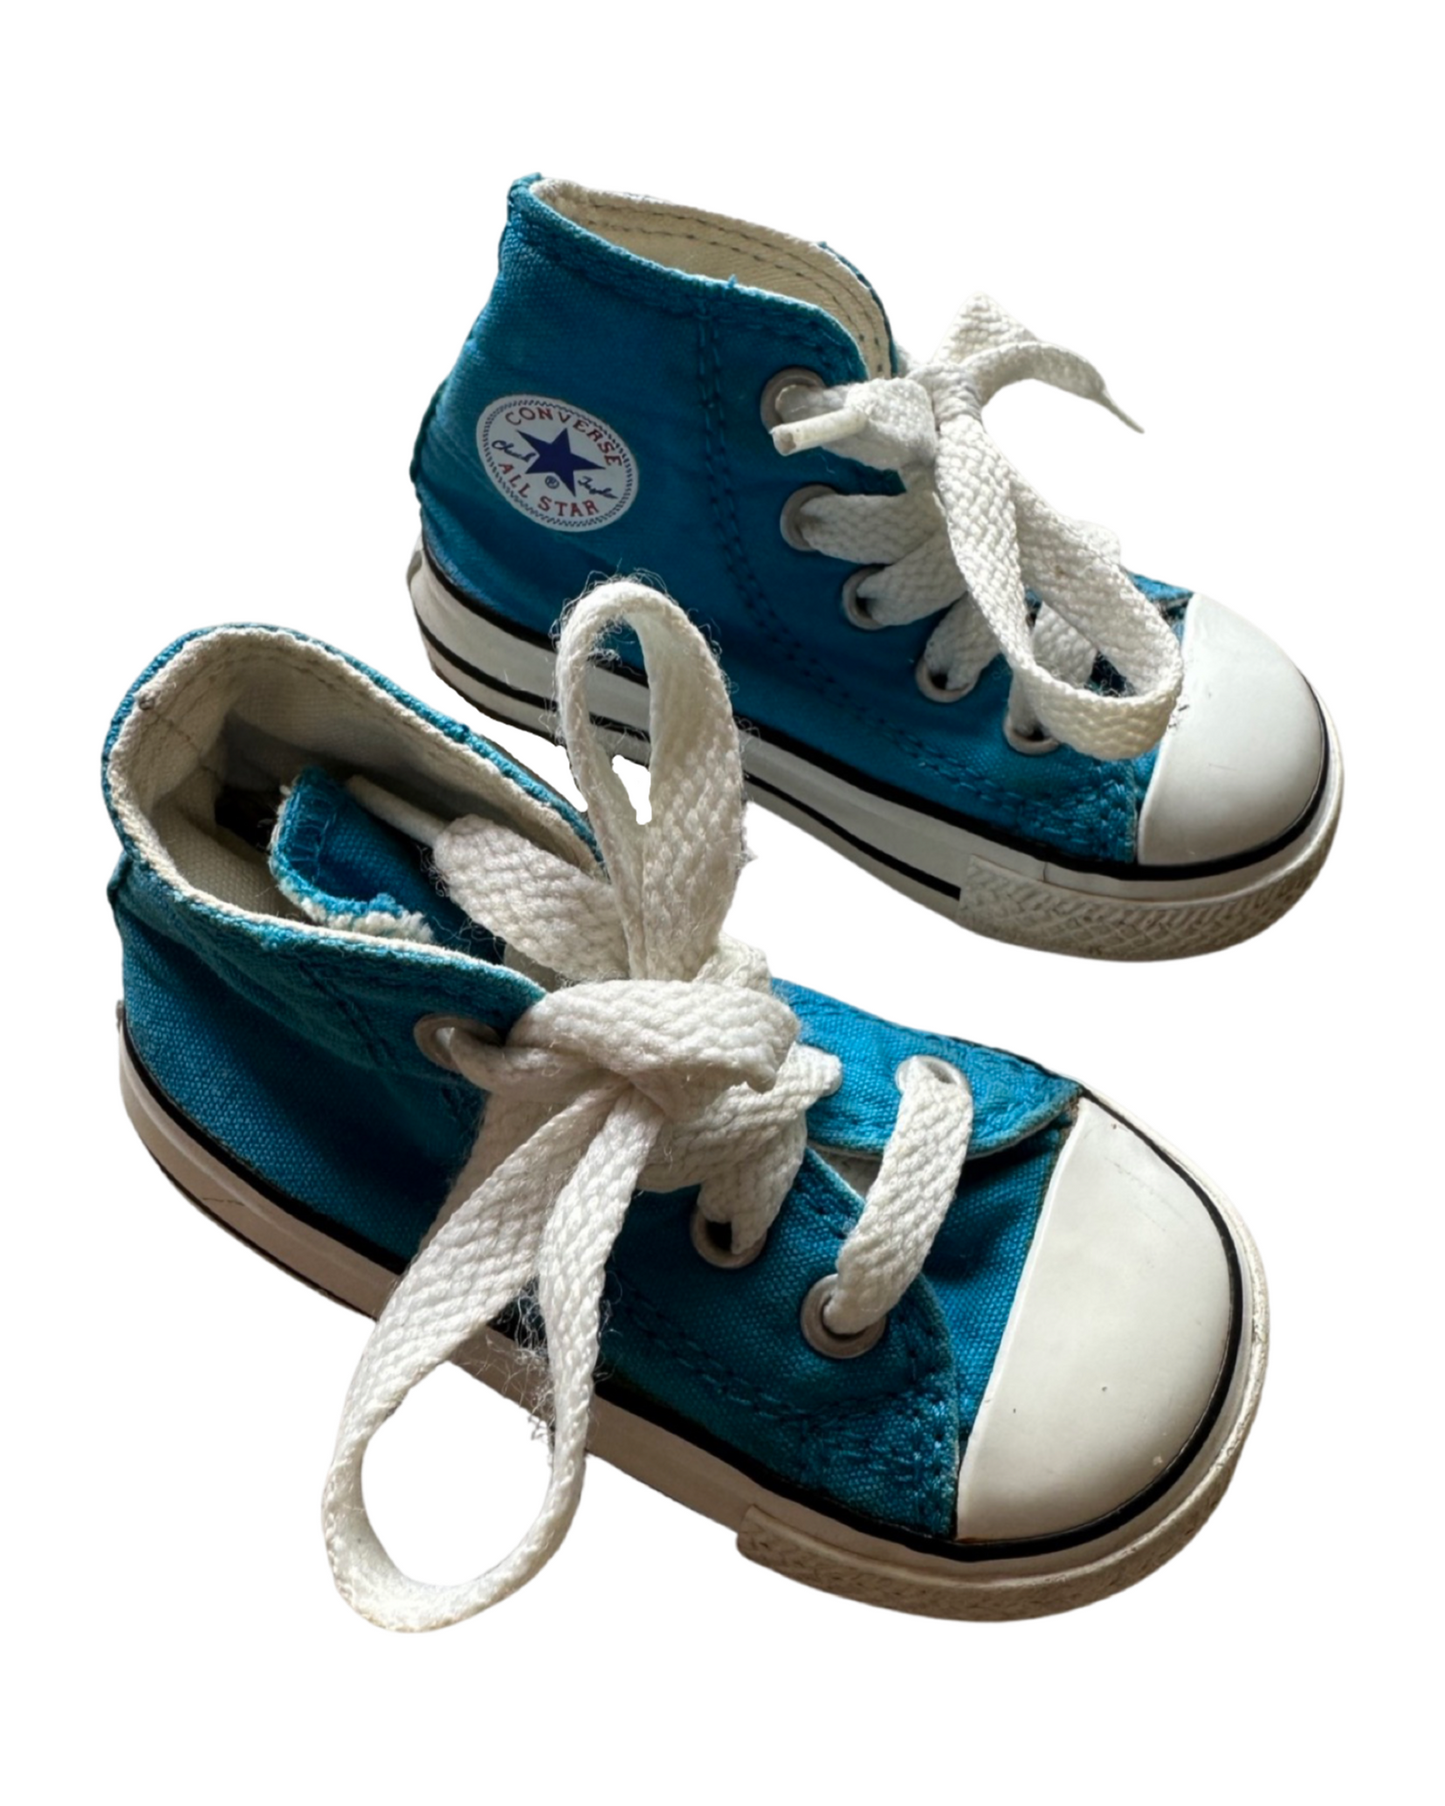 Converse Chuck Taylor infant hi tops in bright blue (UK4/EU20)